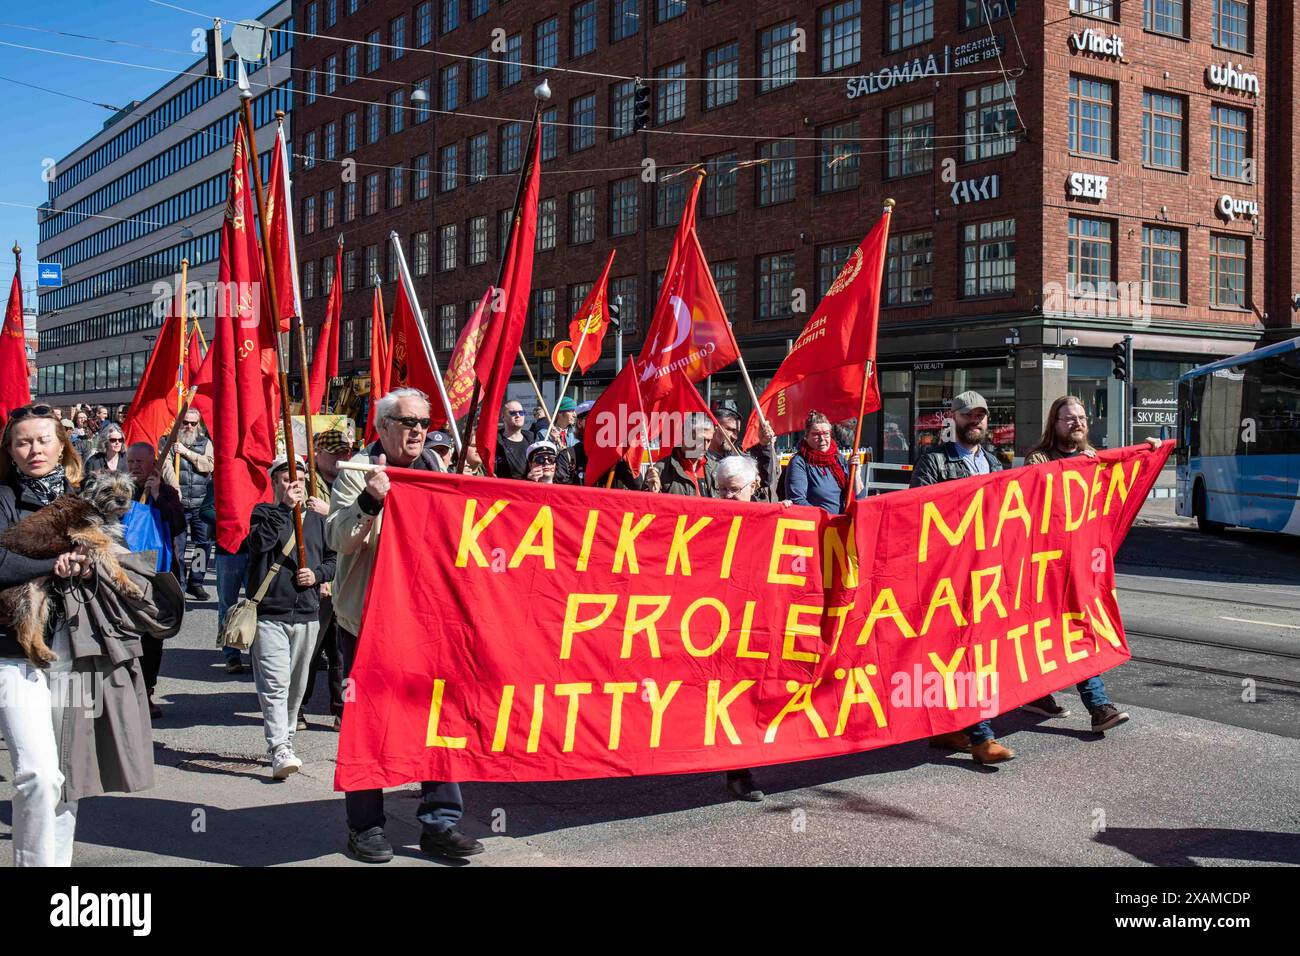 Kaikkien Mädchen proletaarit liittykää yhteen. Kommunisten mit einem großen roten Banner am Labor Day march im Bezirk Hakaniemi in Helsinki, Finnland. Stockfoto